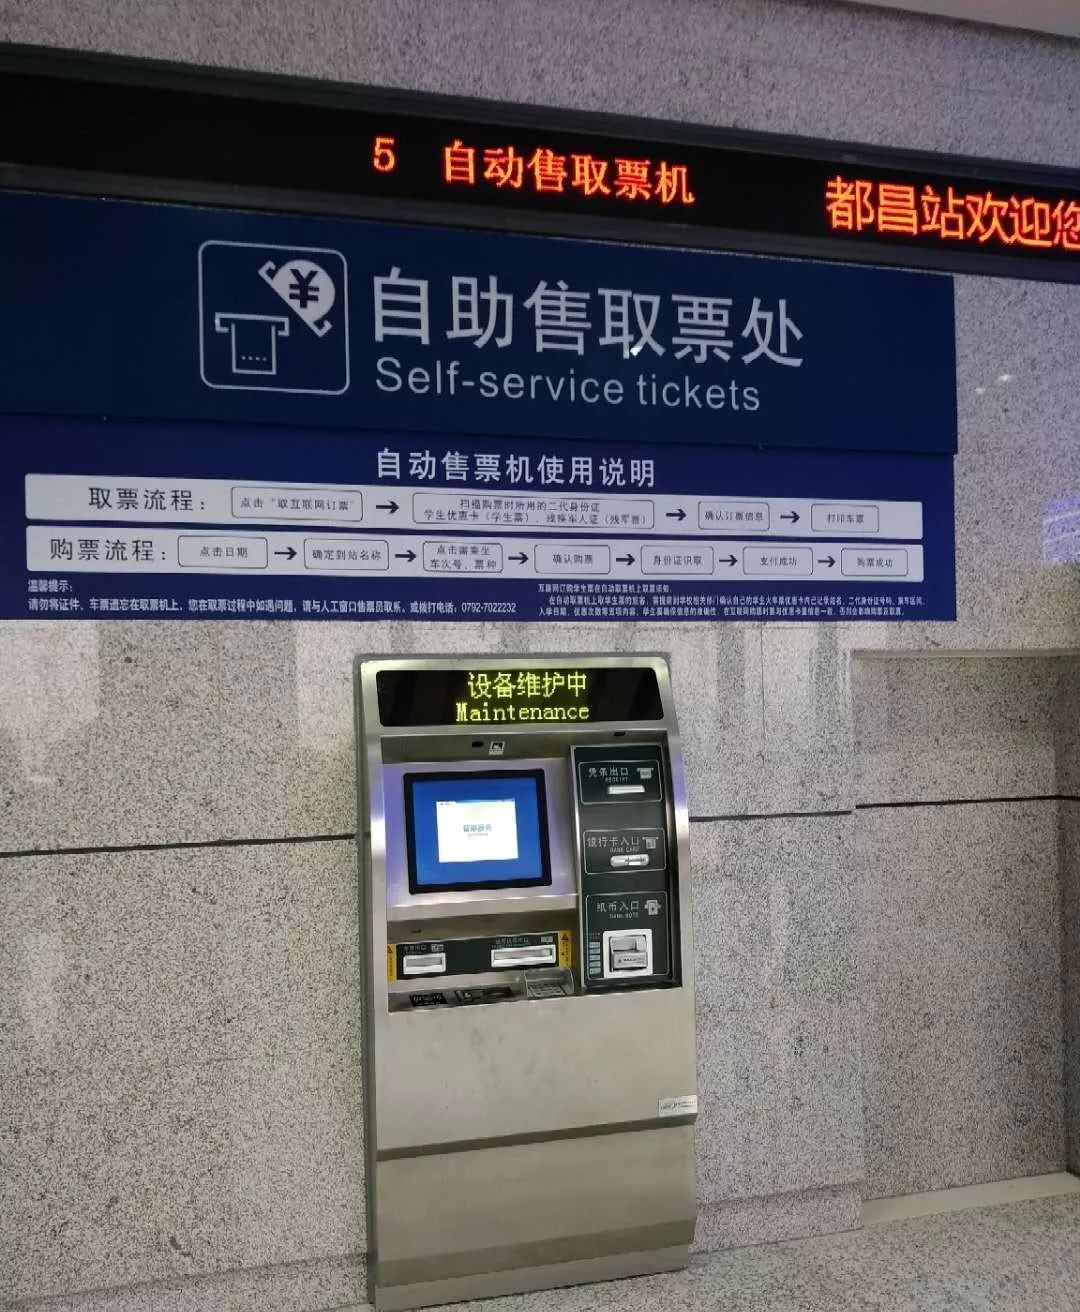 自动取票机 自动取票机取票流程图_火车站里的公共设施有哪些